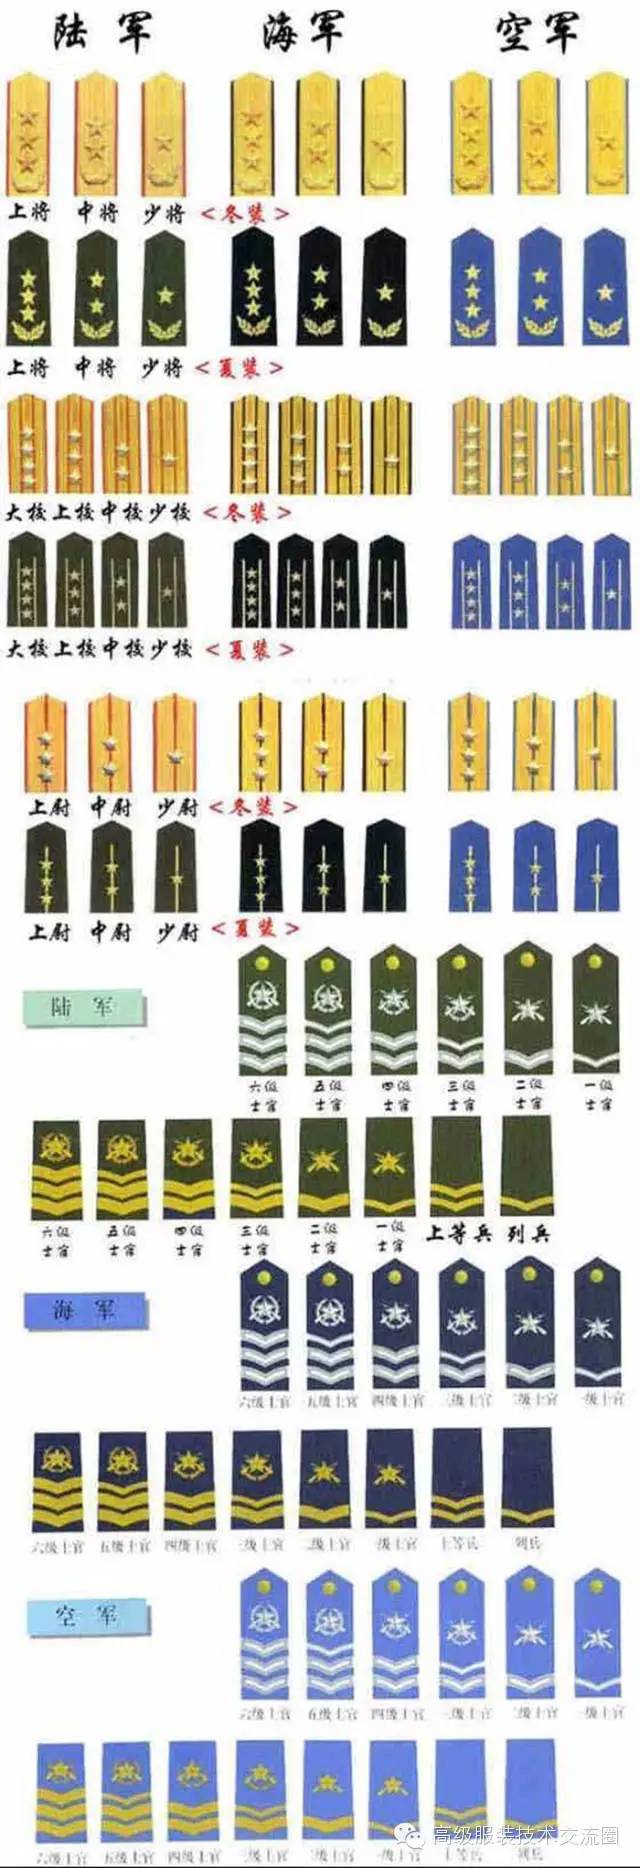 87式军服后还有97式和99式军服,后两款都是在87式的基础上增减系列